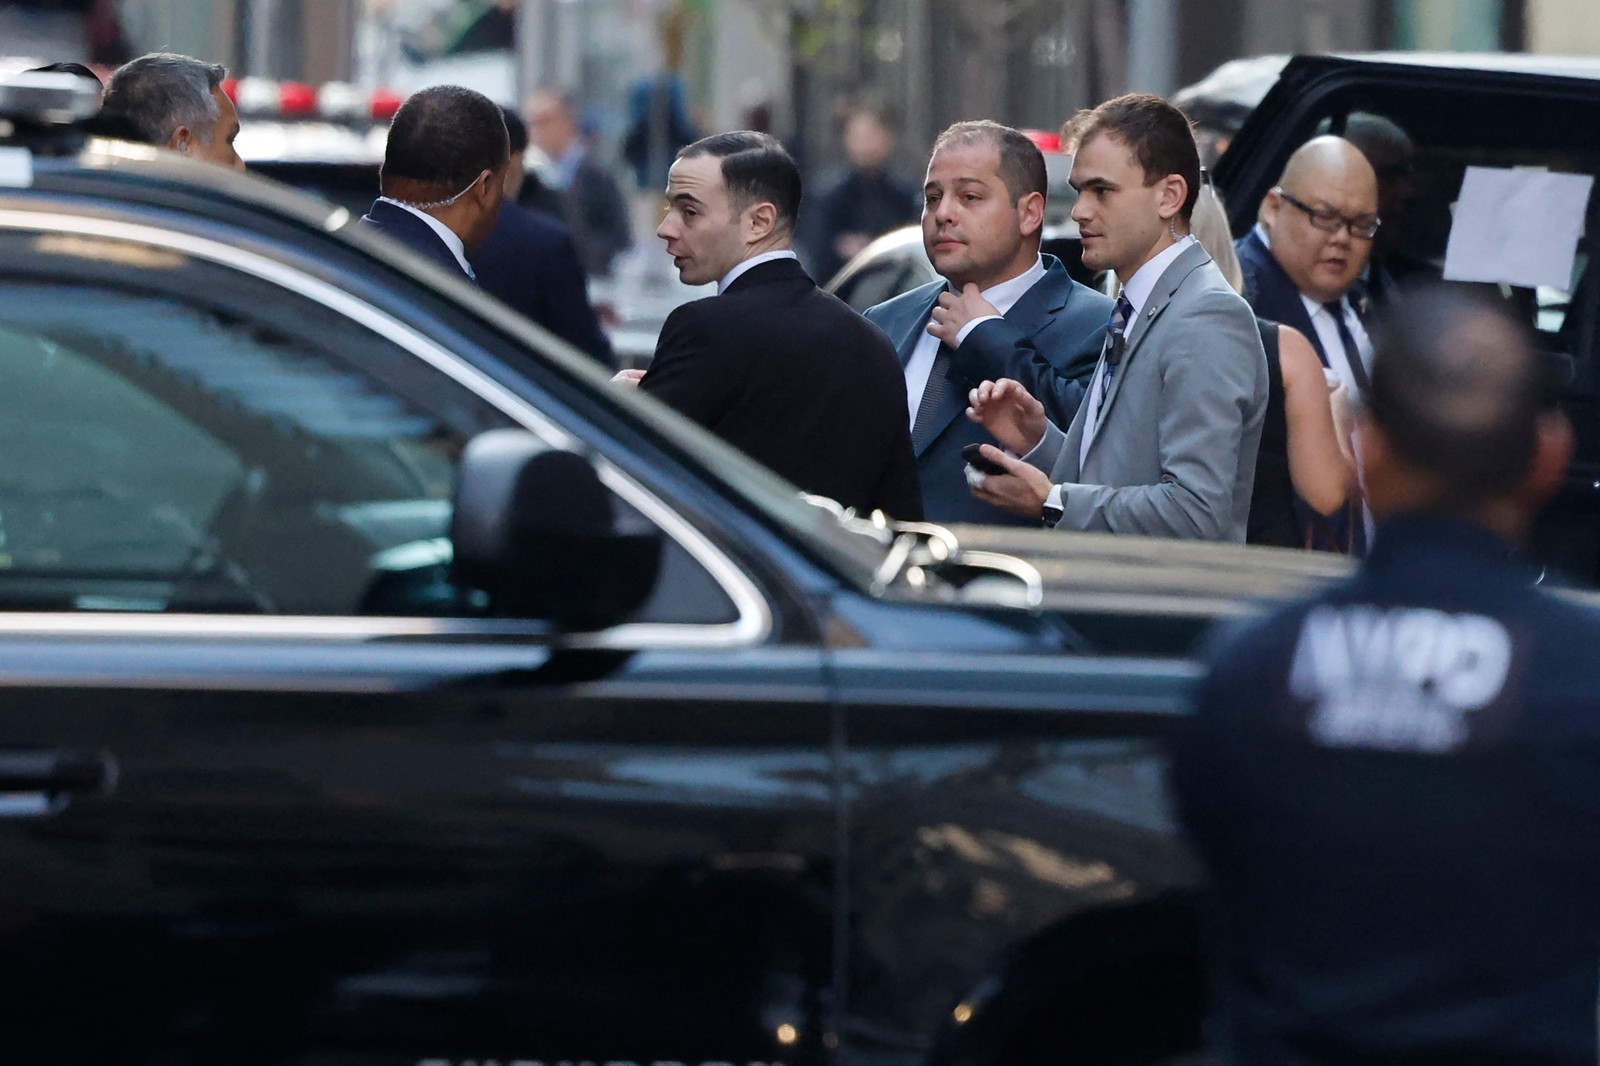 Agentes do serviço secreto montam guarda em frente a Trump Tower - Foto: Michael M. Santiago / GETTY IMAGES NORTH AMERICA / Getty Images via AFP